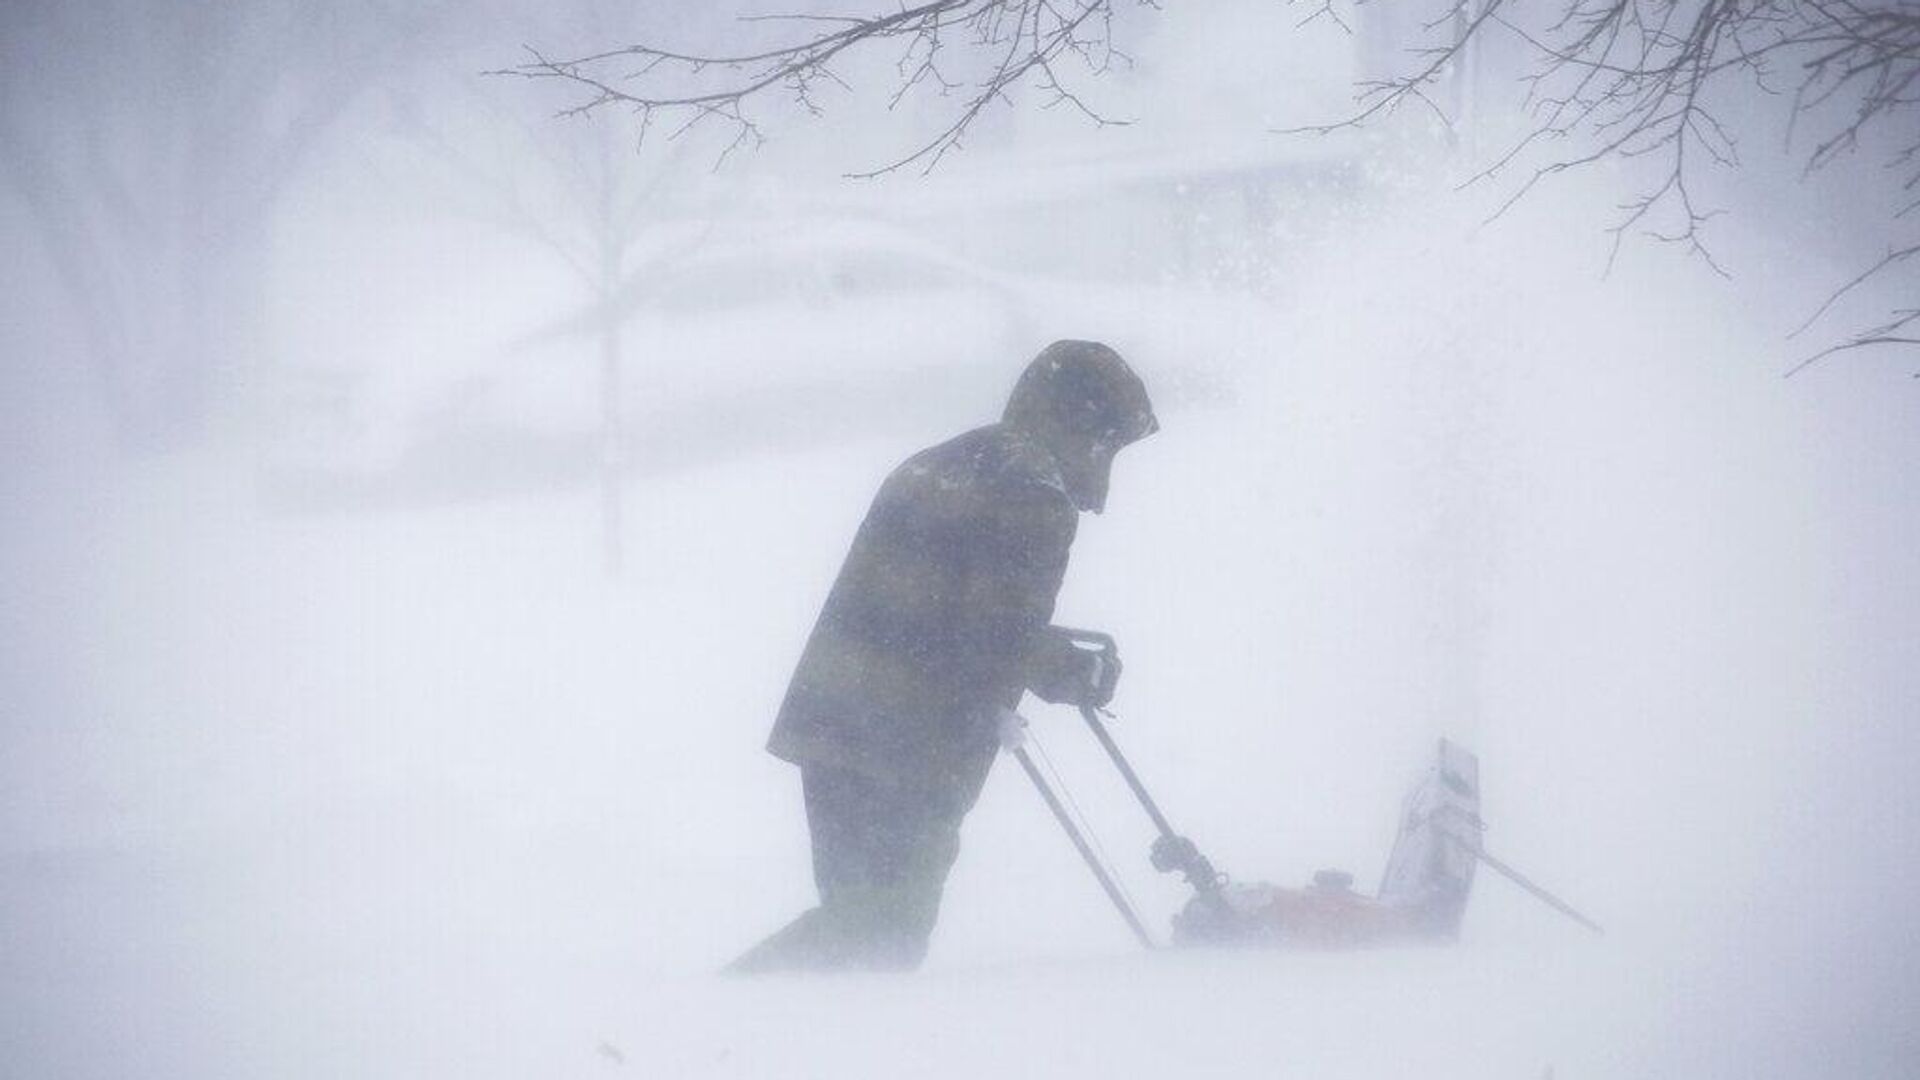 Человек убирает снег во время зимнего шторма, прокатившегося по Западному Нью-Йорку в субботу, 24 декабря 2022 г., в Амхерсте, штат Нью-Йорк. - РИА Новости, 1920, 25.12.2022